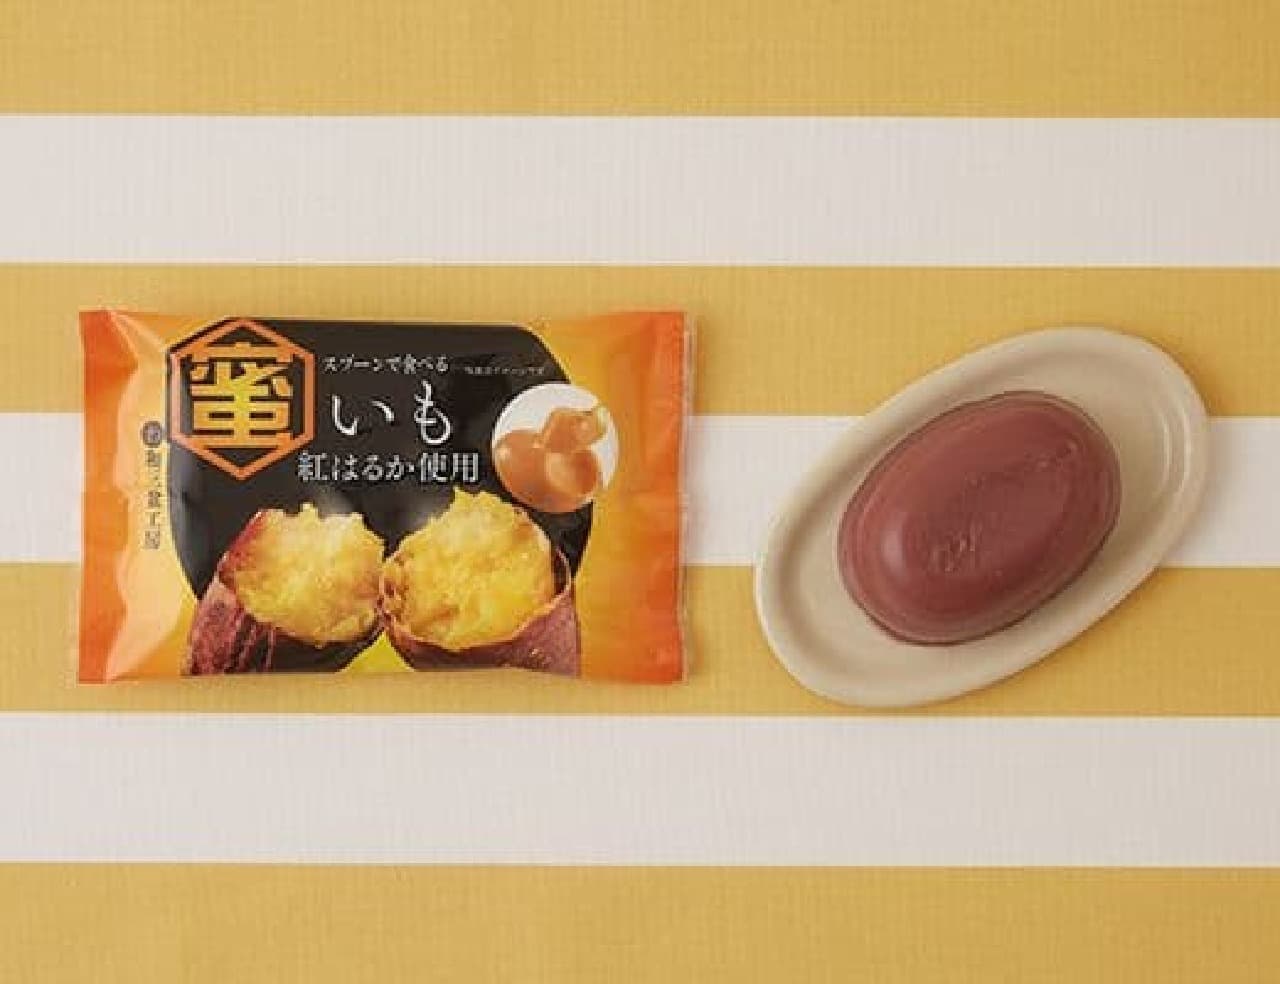 LAWSON "Tokushima Sangyo Spoon-eat Honey Imoimo with Red Haruka 70g".